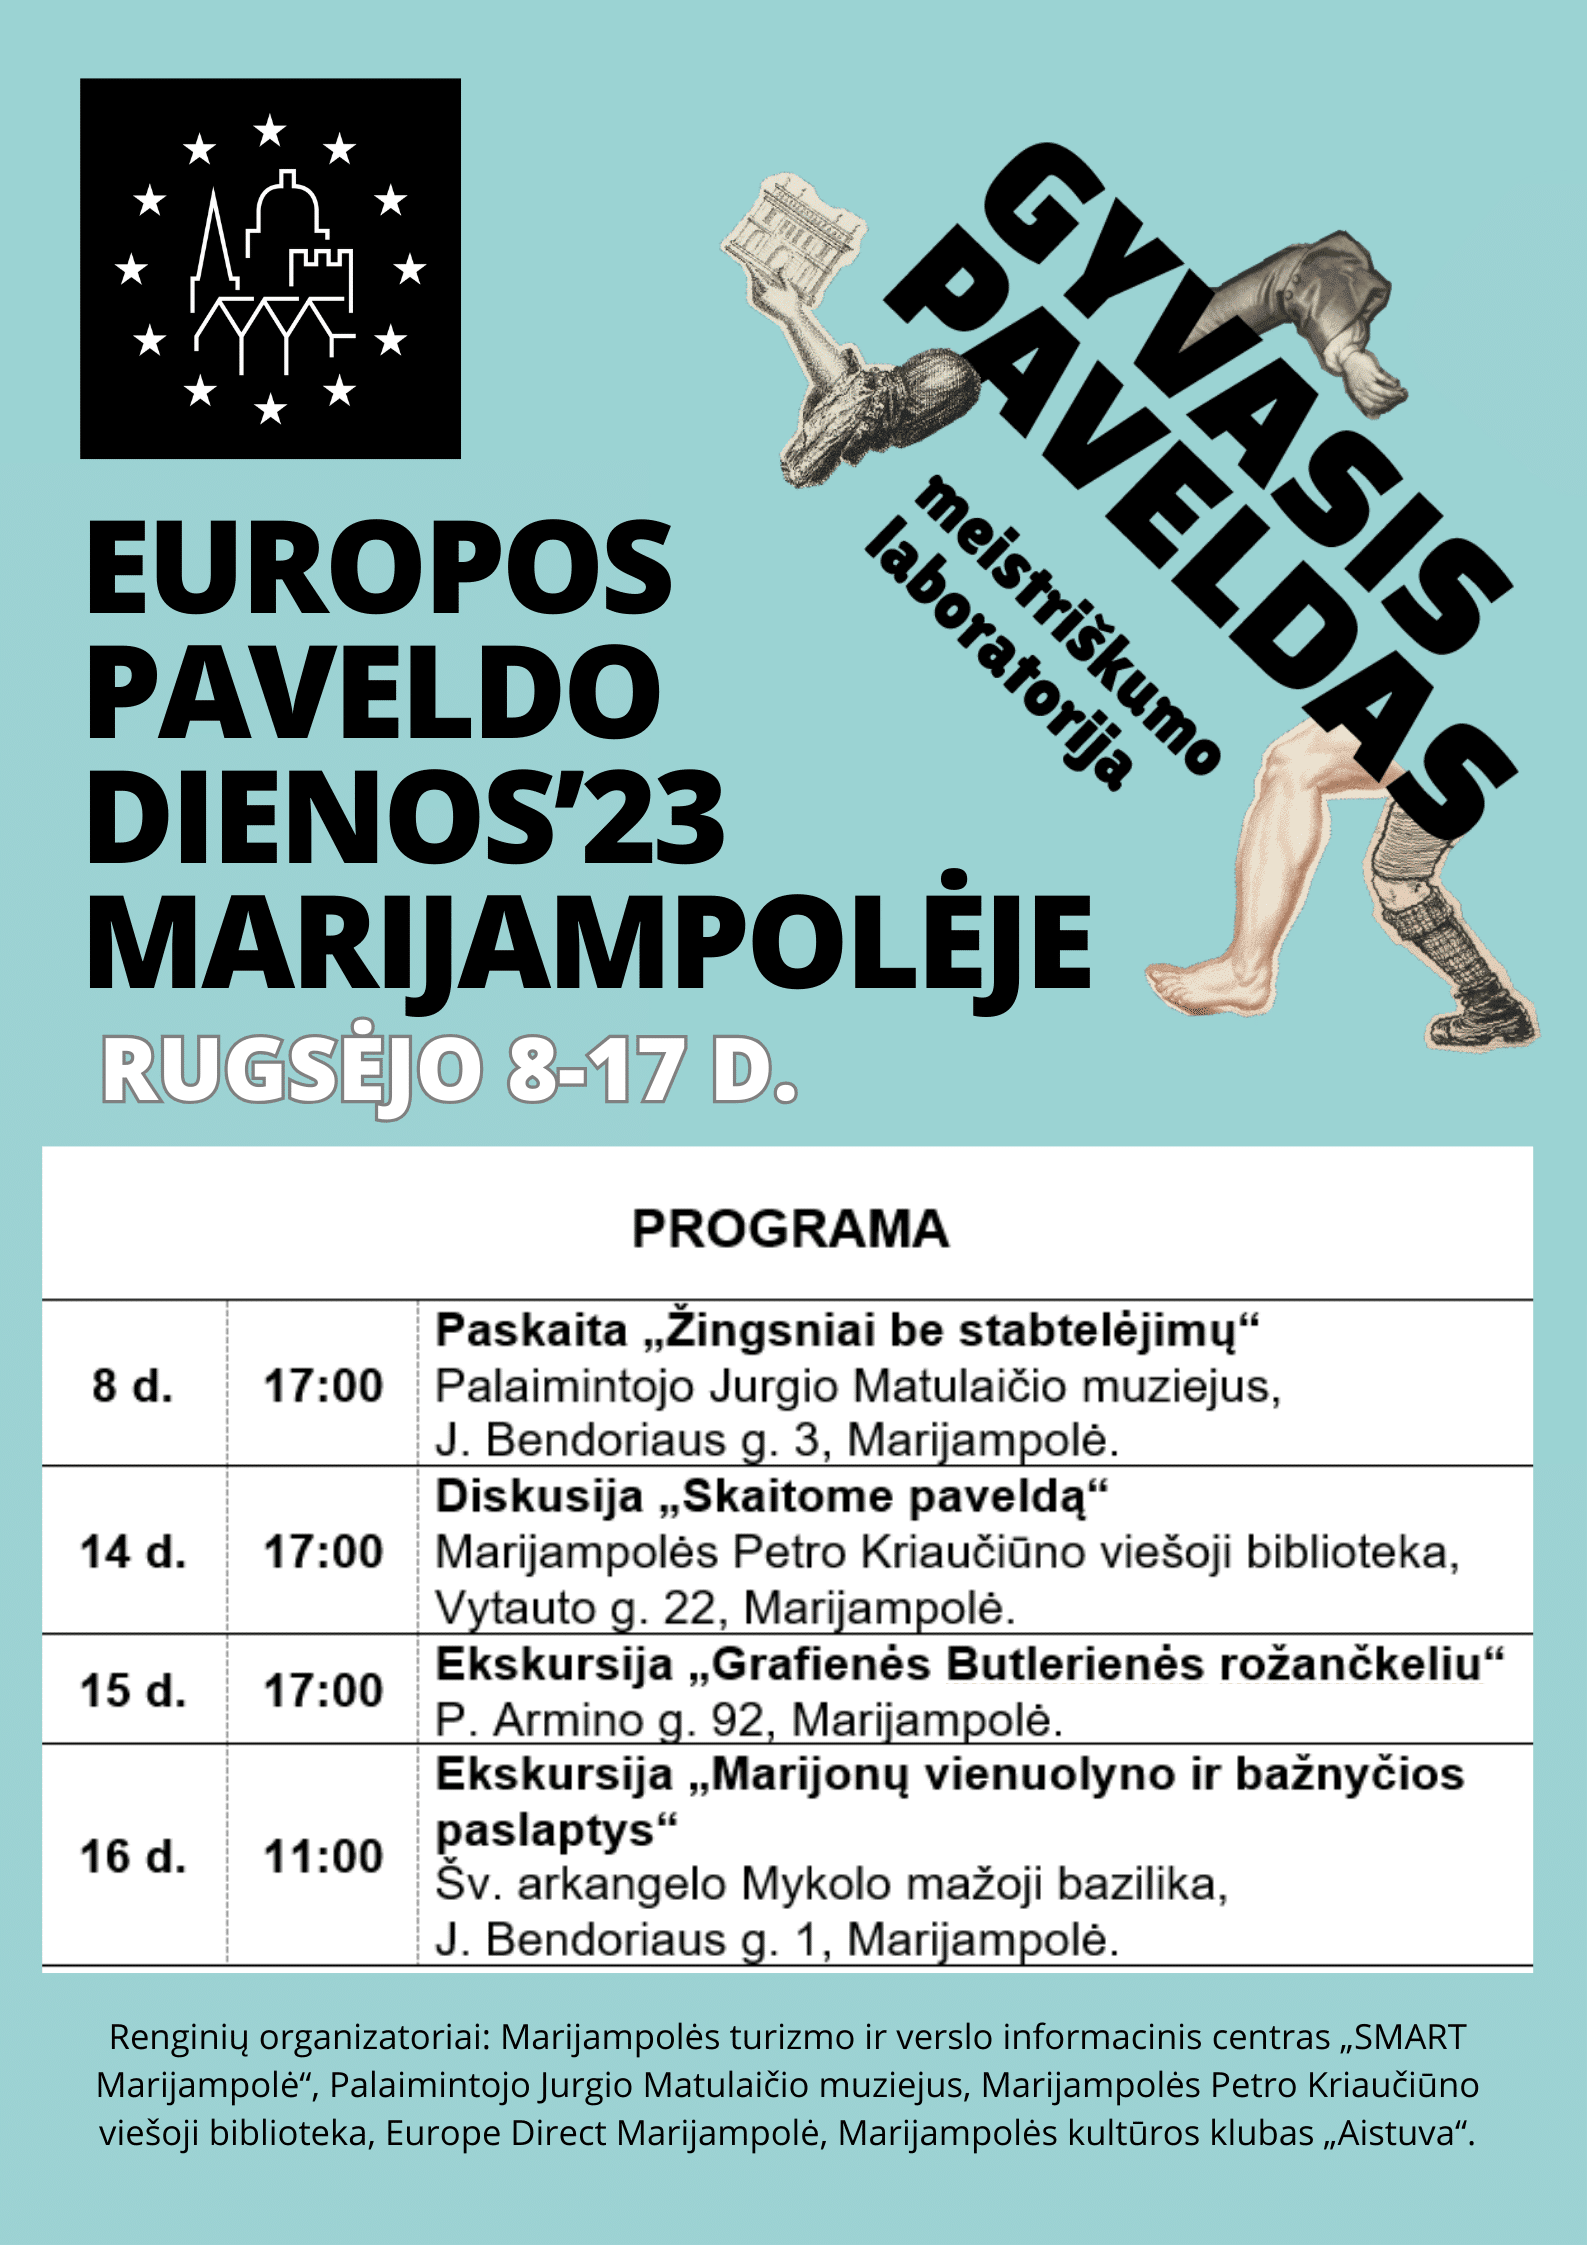 You are currently viewing Kviečiame į Europos paveldo dienų’23 renginius Marijampolėje!